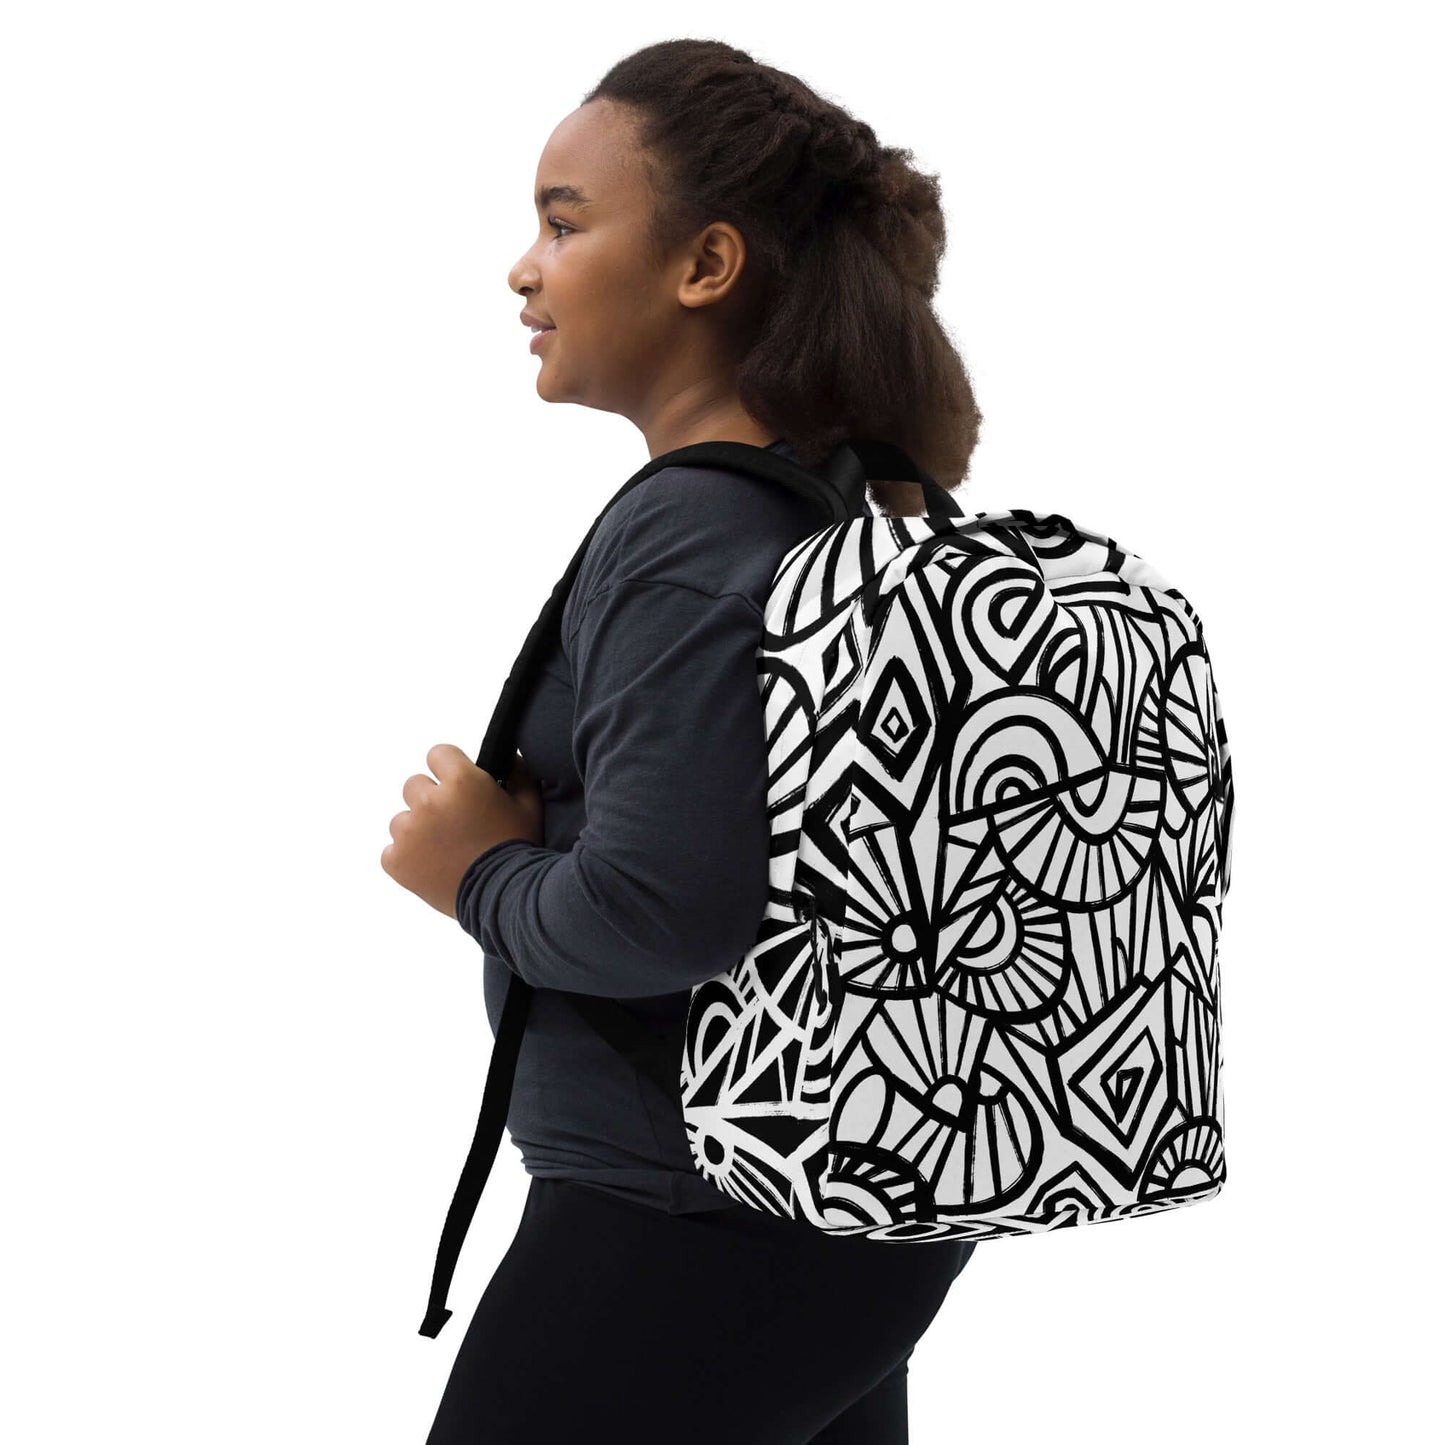 Graf Backpack